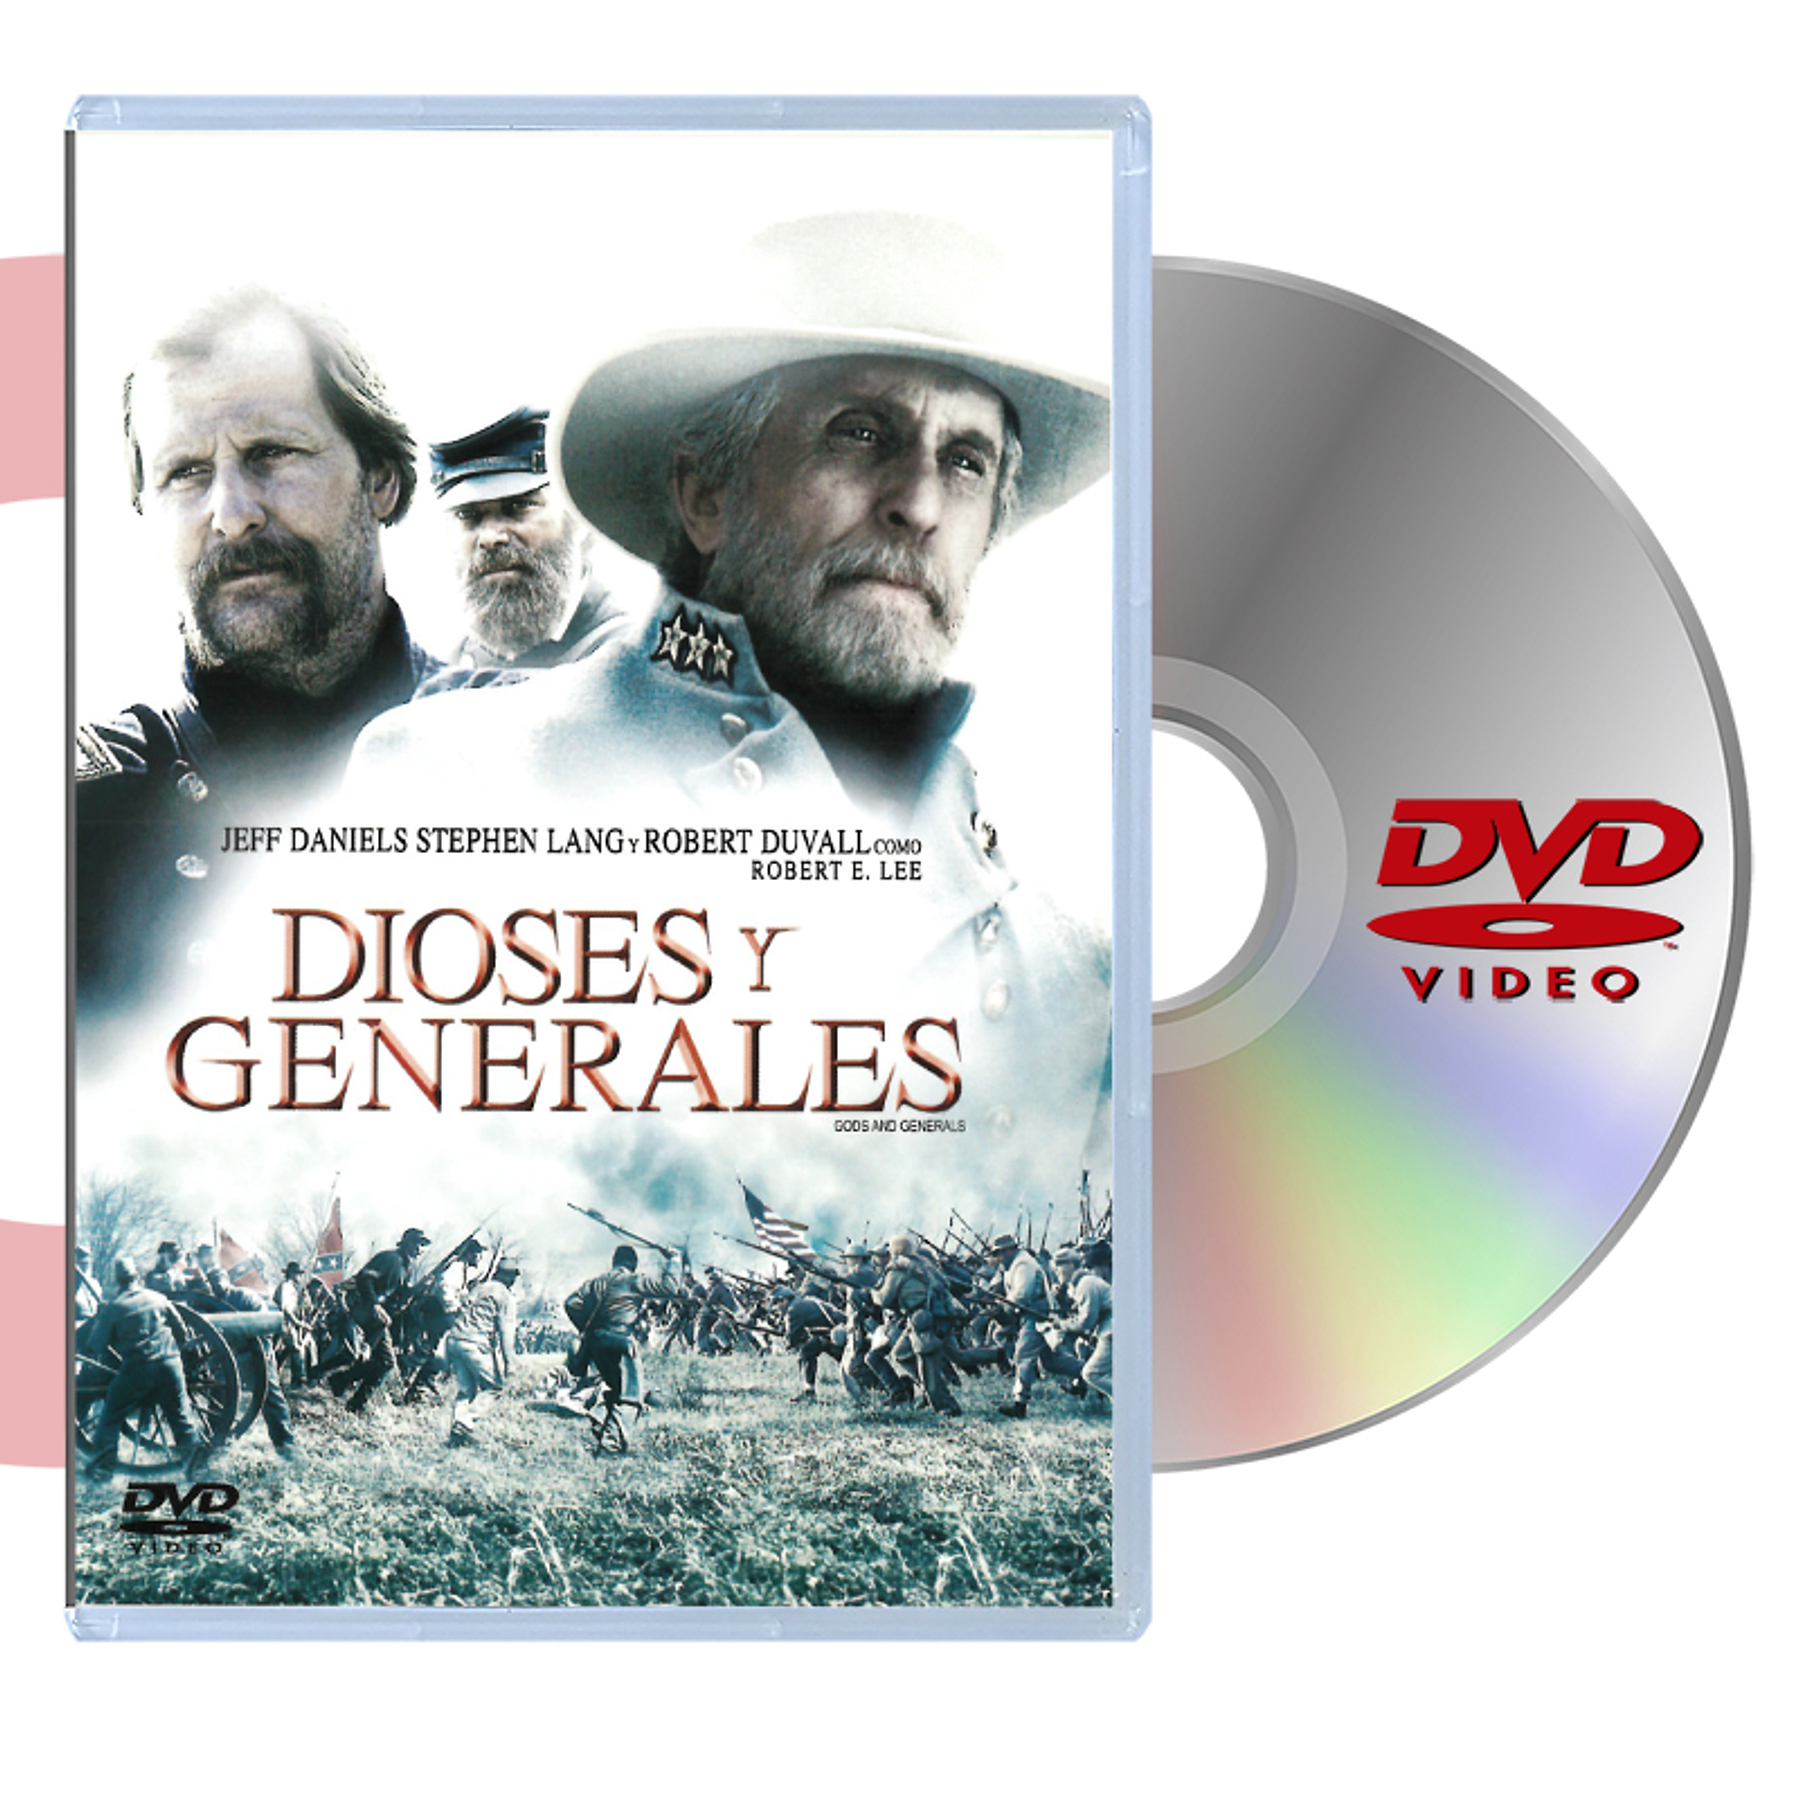 DVD DIOSES Y GENERALES